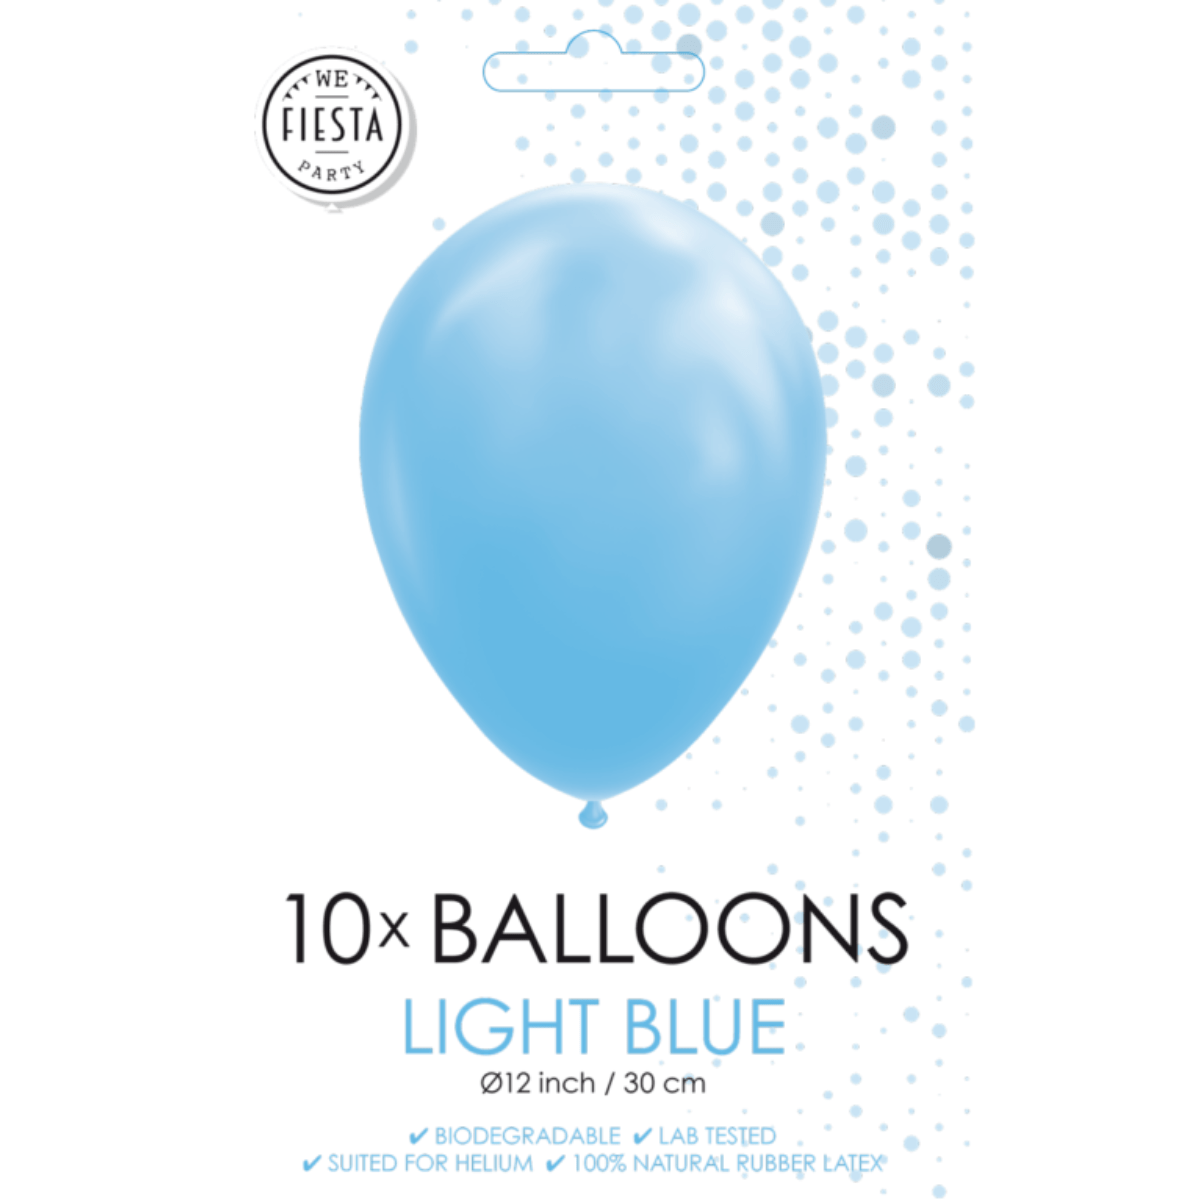 Ballonger Lyseblå 10stk